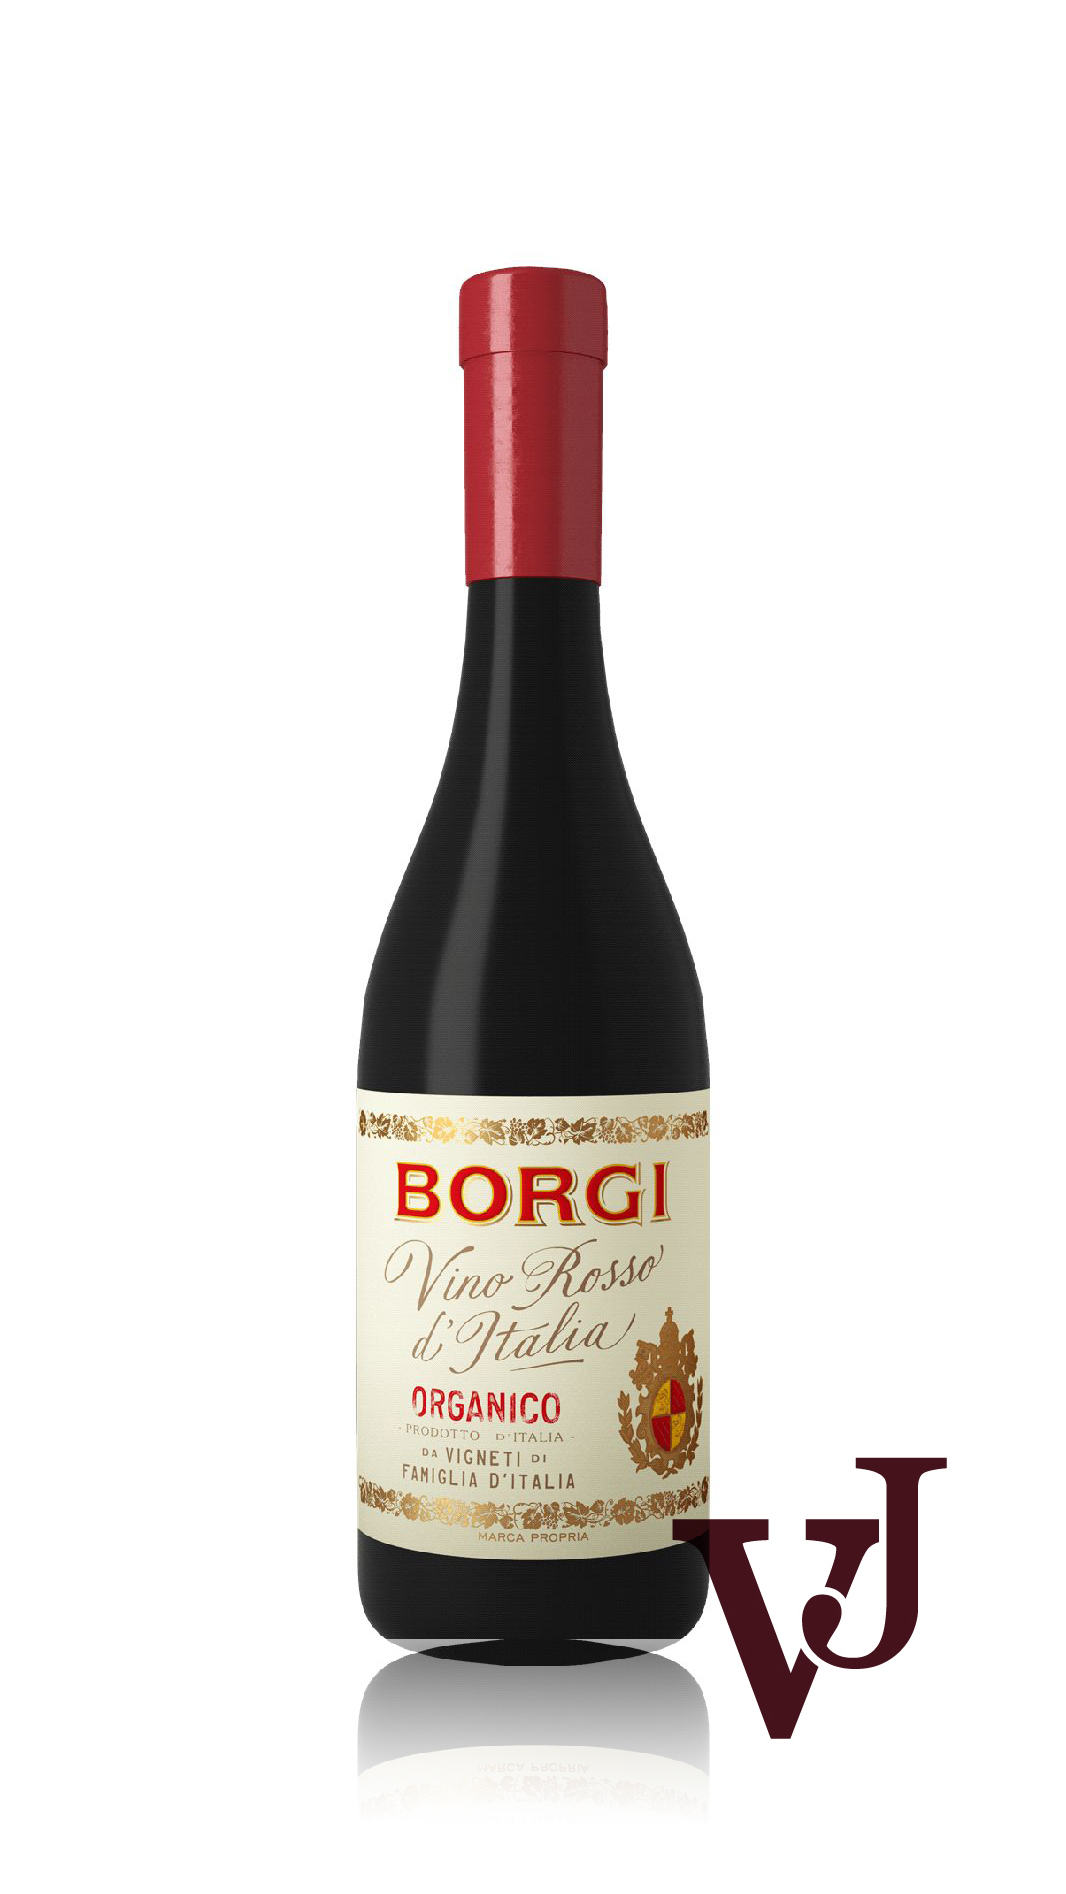 Rött Vin - Borgi Organico artikel nummer 601301 från producenten Cantinetta Vini från området Italien